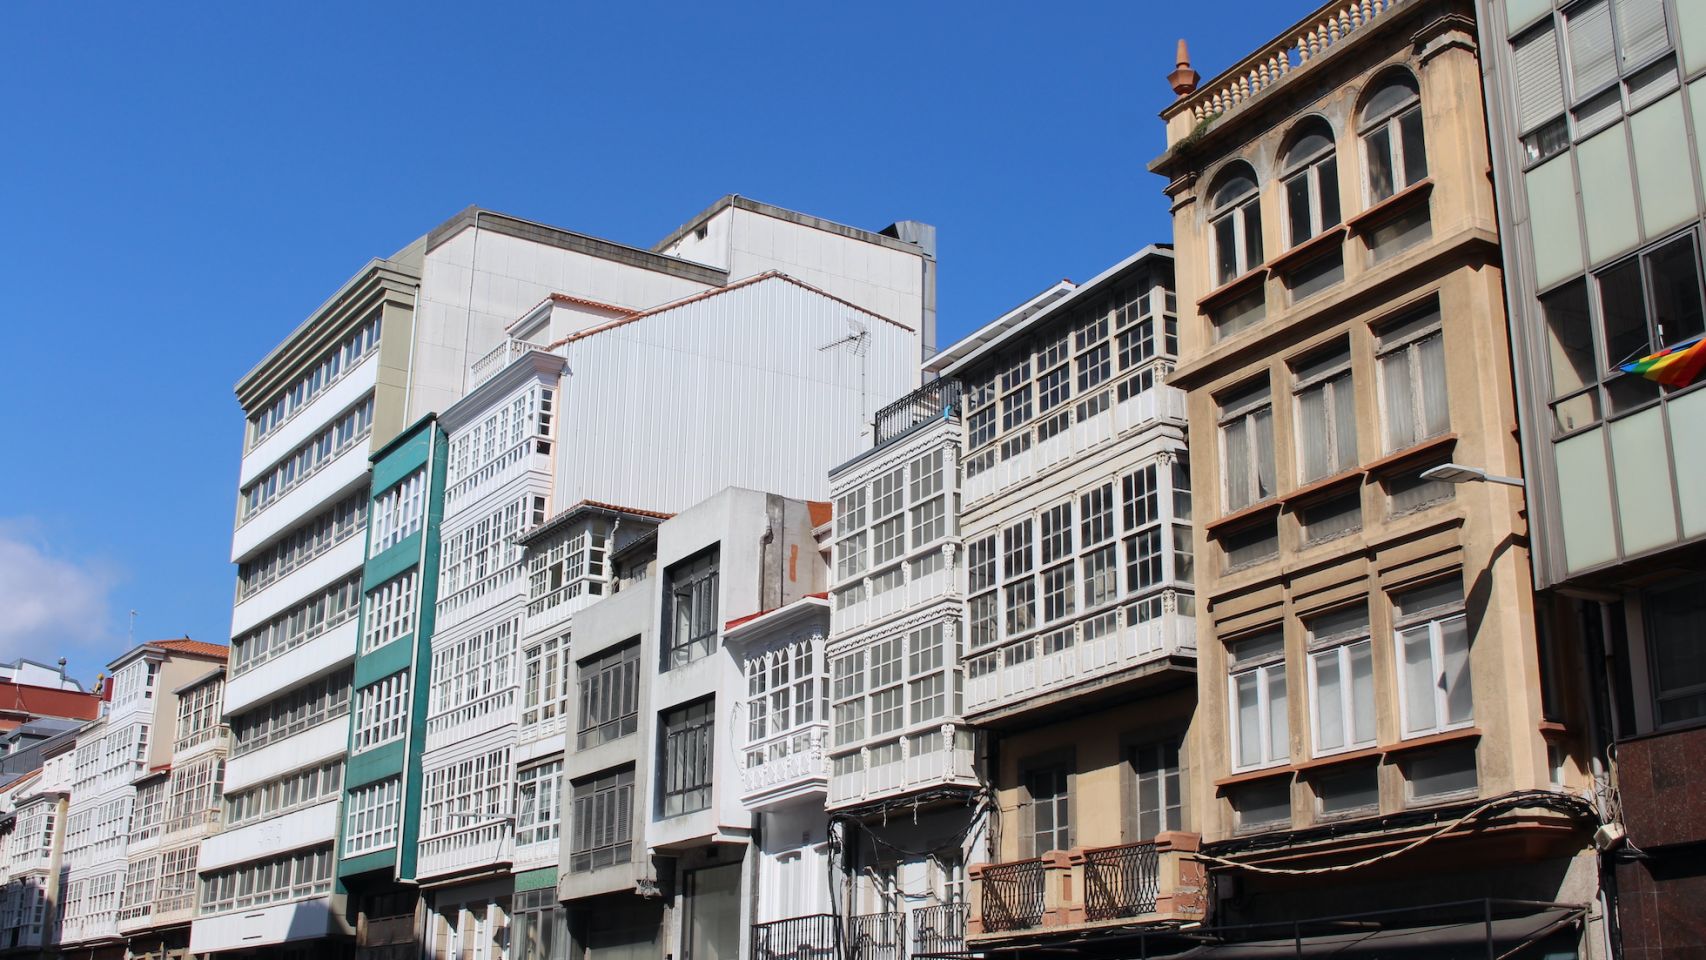 Edificios situados en la calle de San Andrés.